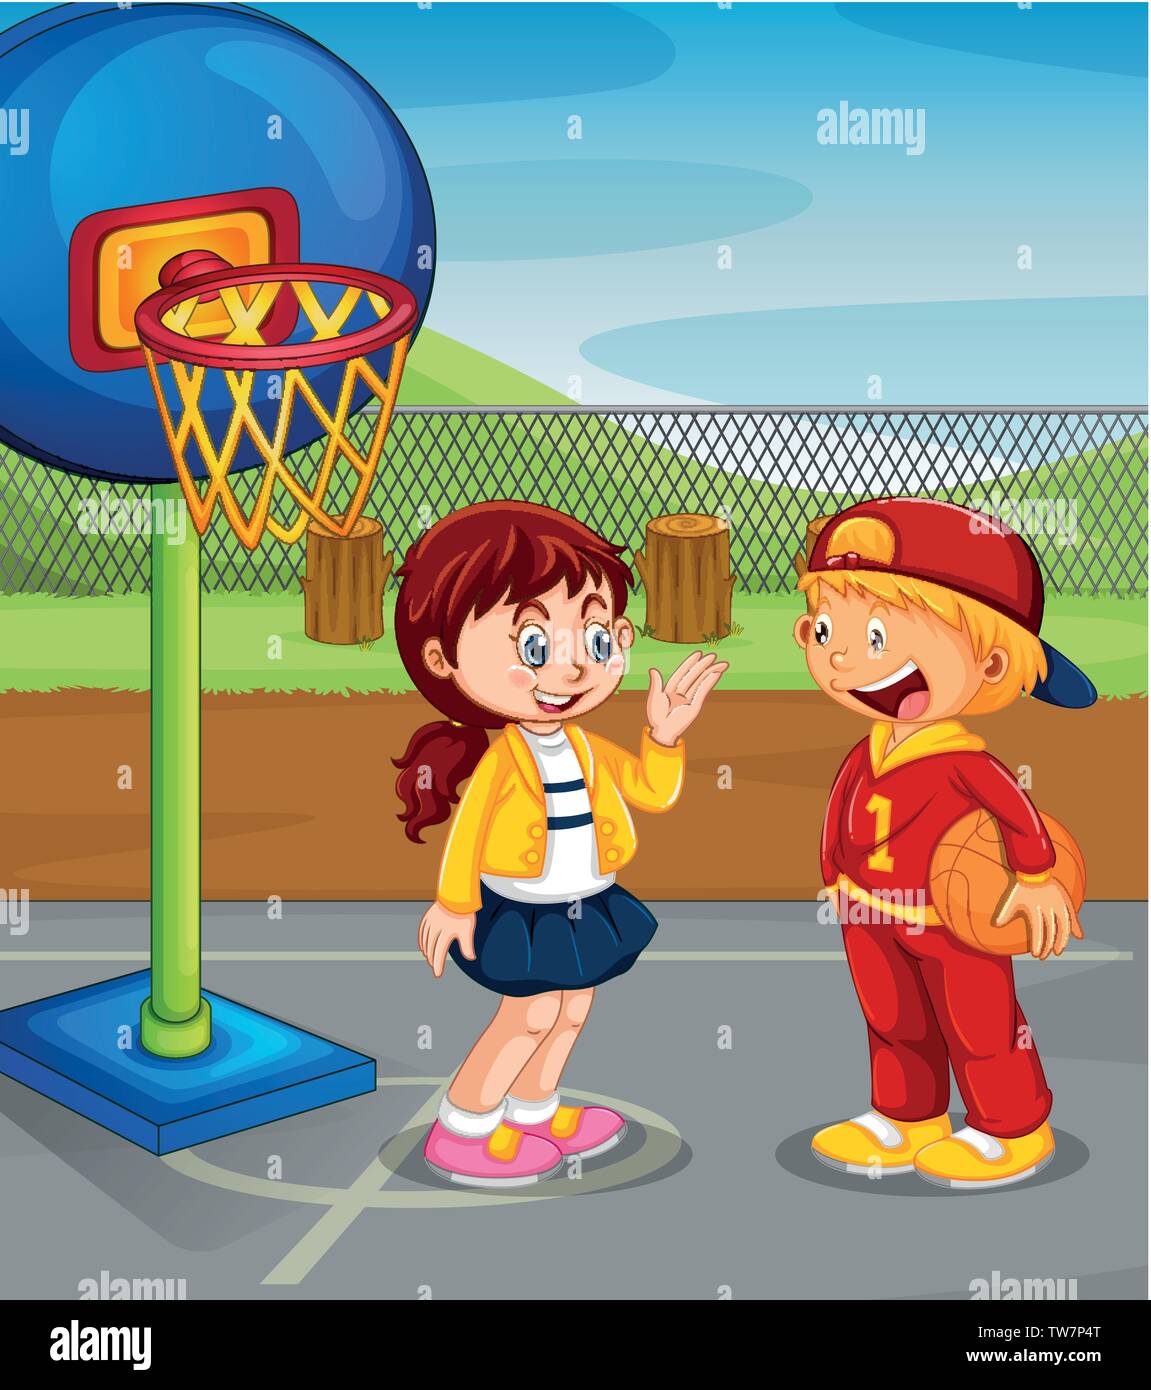 boy and girl playing basketball Stock Vector